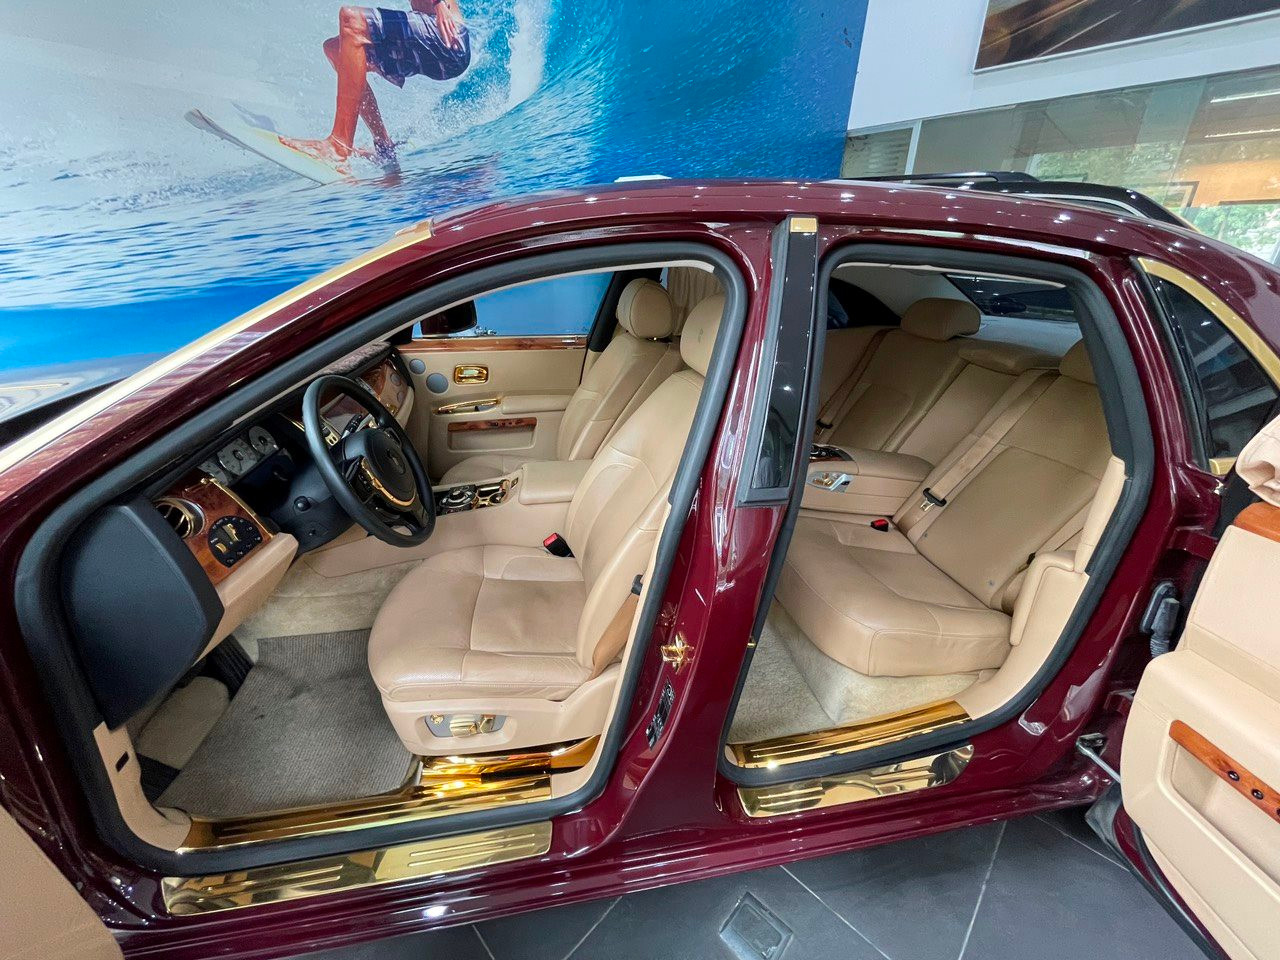 Siêu xe Rolls-Royce dát vàng của ông Trịnh Văn Quyết tiếp tục đấu giá thất bại lần 2 - Ảnh 4.